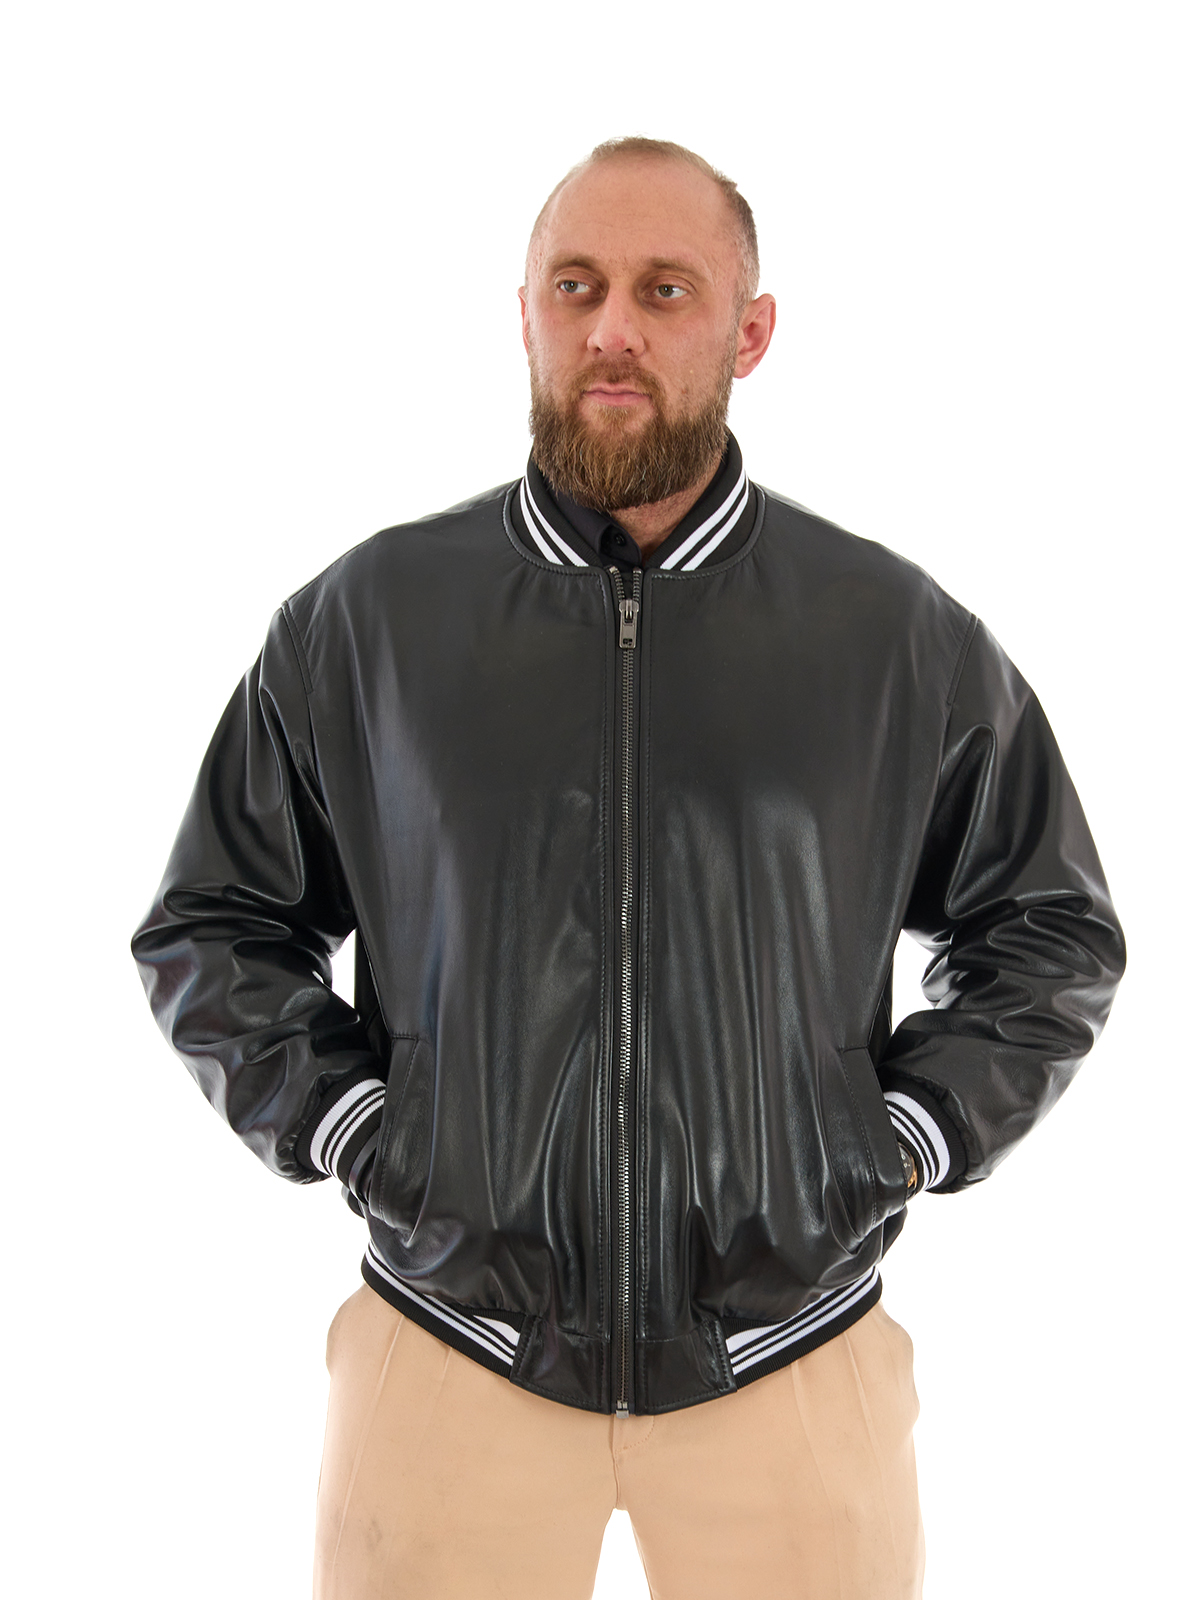 Кожаная куртка мужская Дубленкин BOMBM черная 56 RU